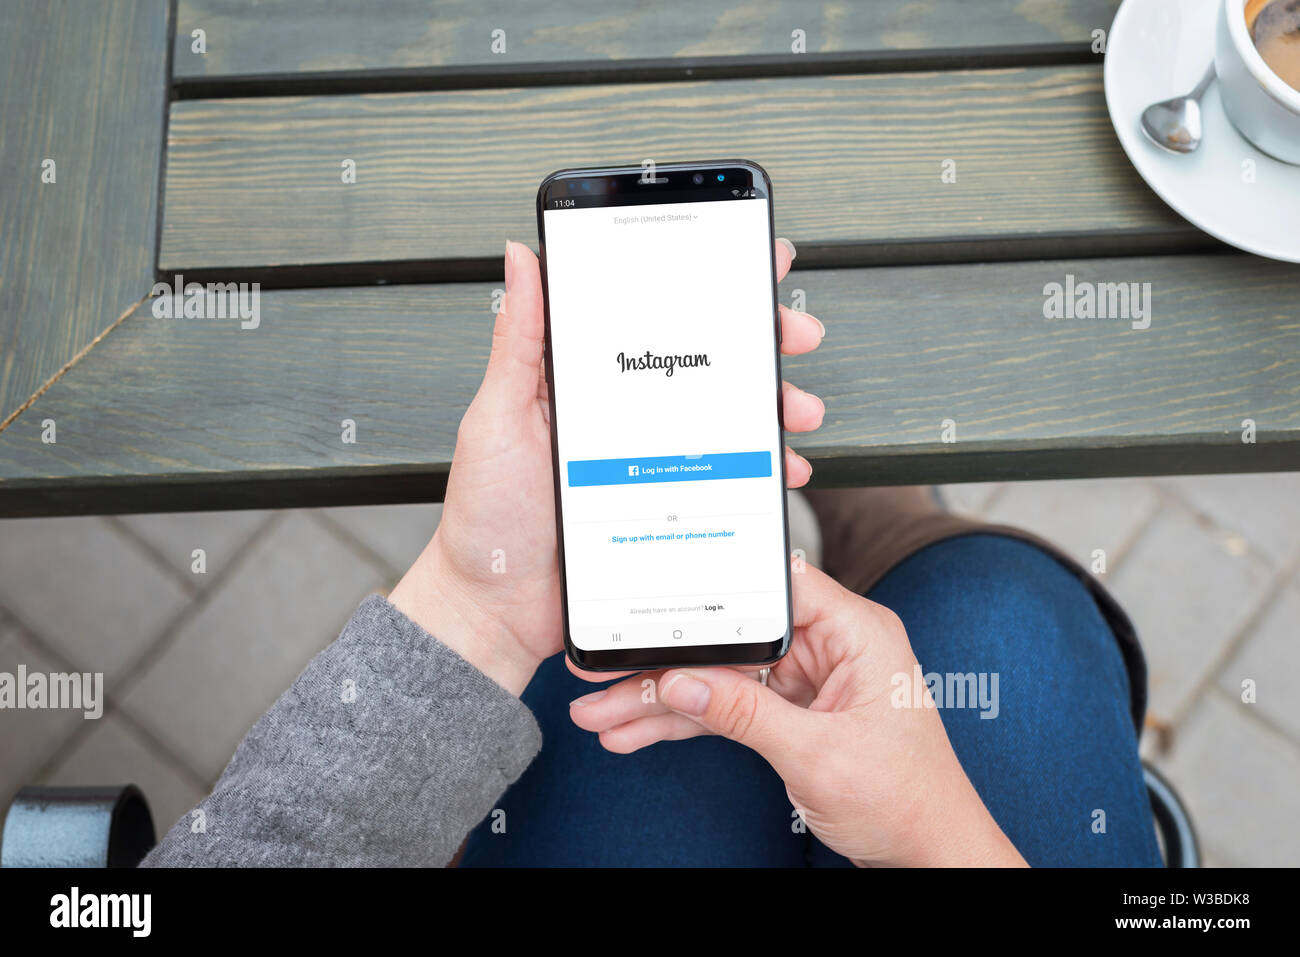 SARAJEVO, BOSNIEN UND HERZEGOWINA - Juli 14, 2019: Neue Instagram Login Form mit Login mit Facebook option. Frau mit Samsung Galaxy smart phone ein Stockfoto